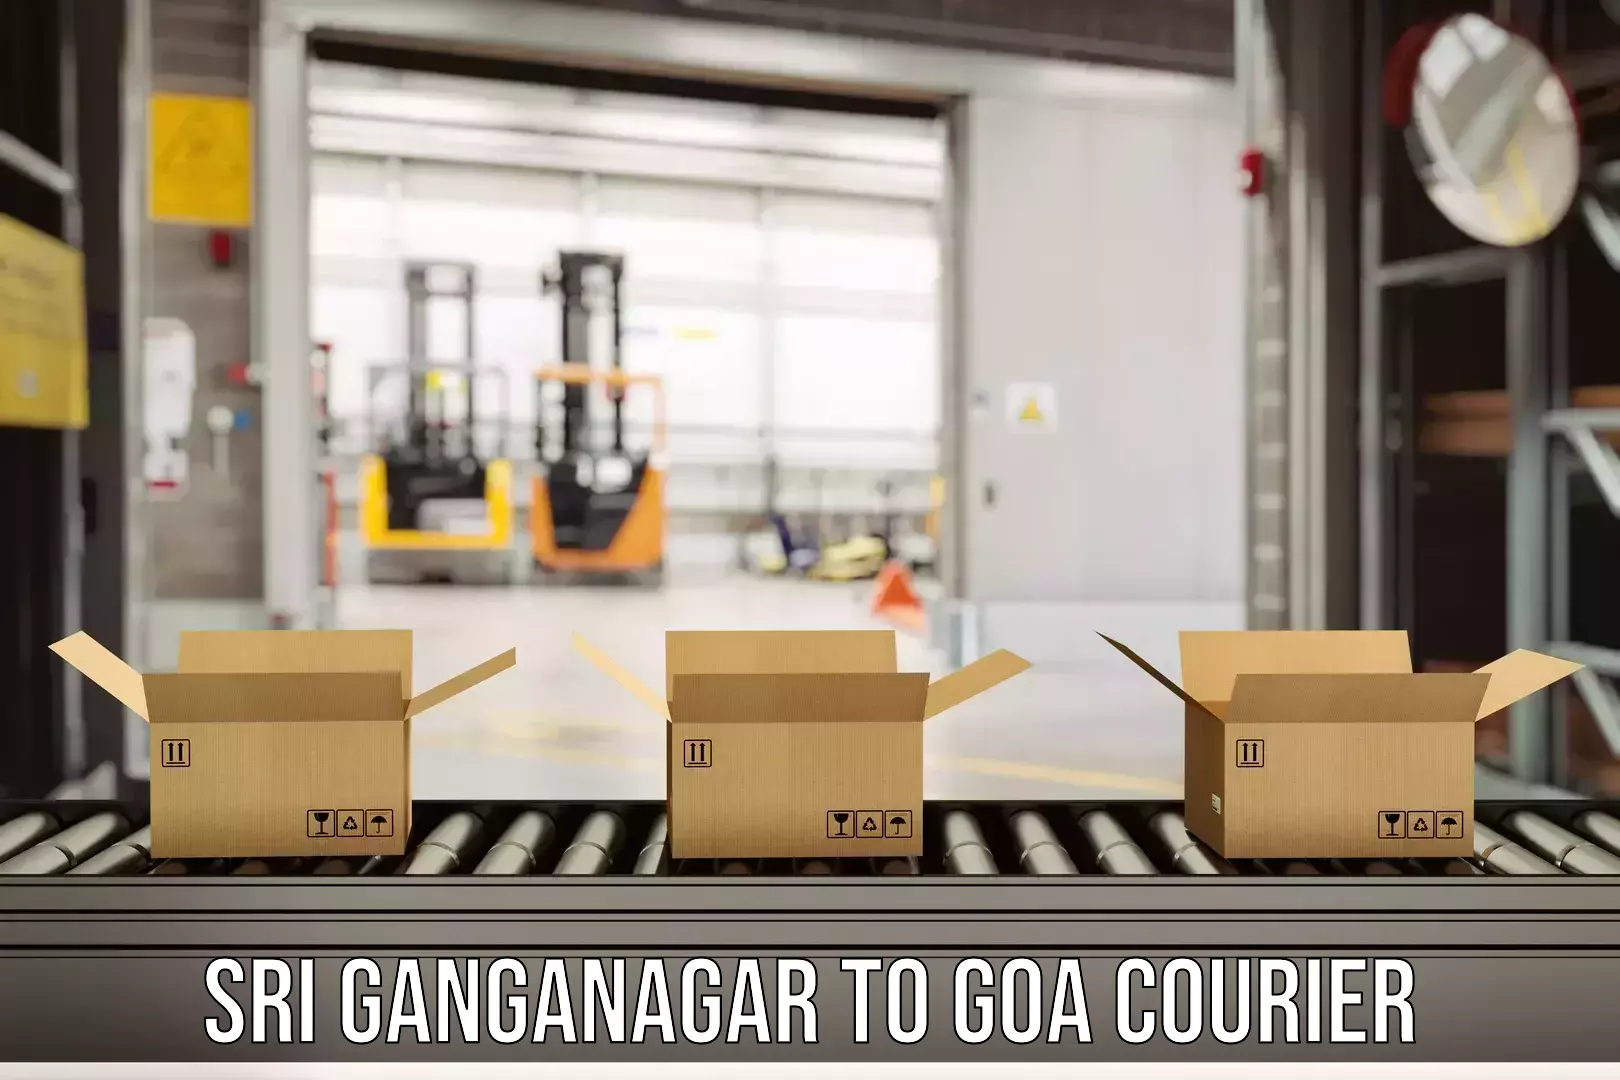 Courier service comparison Sri Ganganagar to Mormugao Port